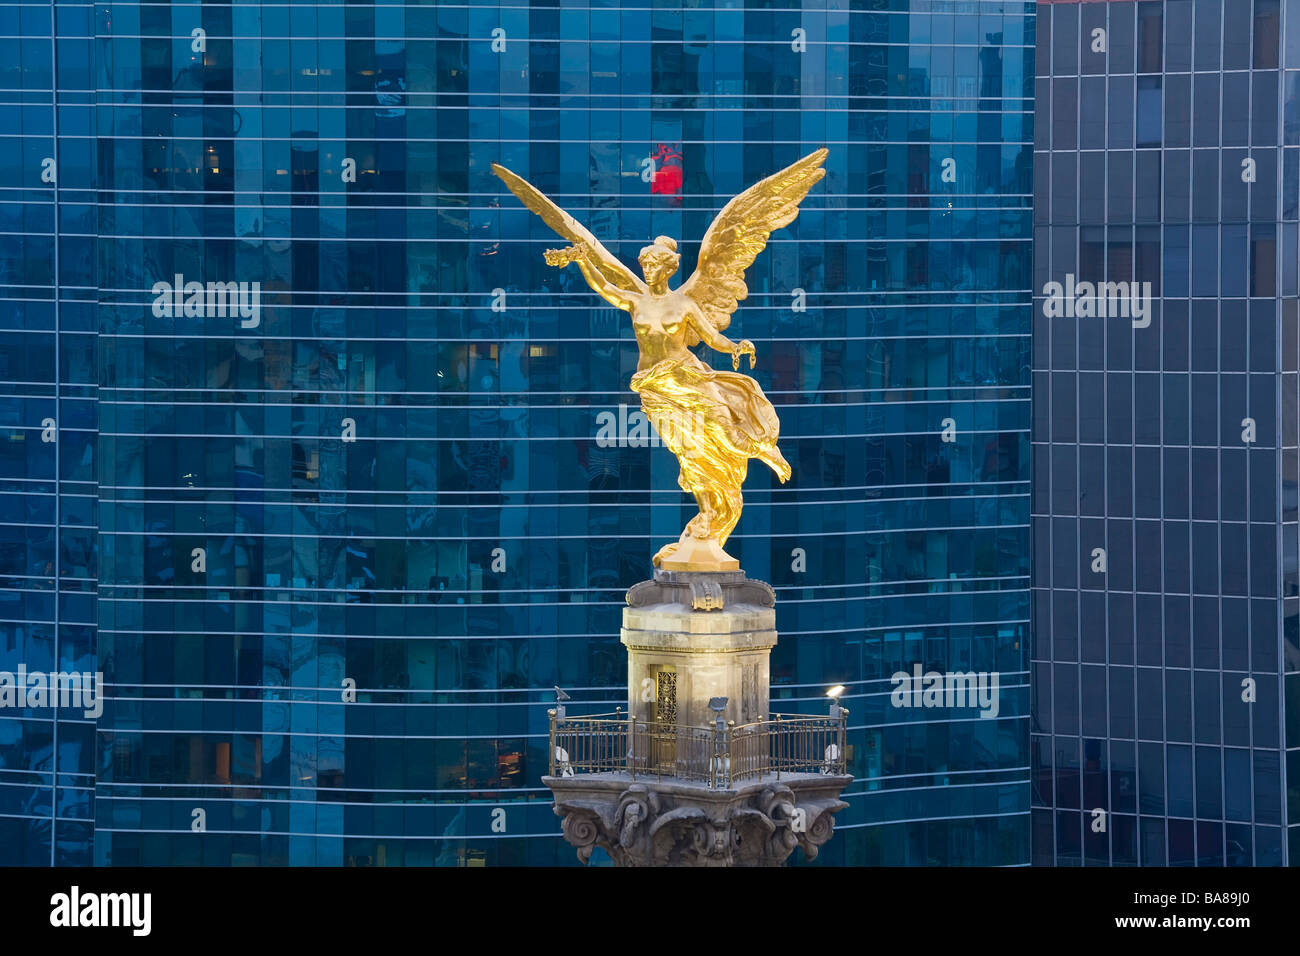 El Ángel de la independencia monumento oficinas Ciudad de México México Foto de stock